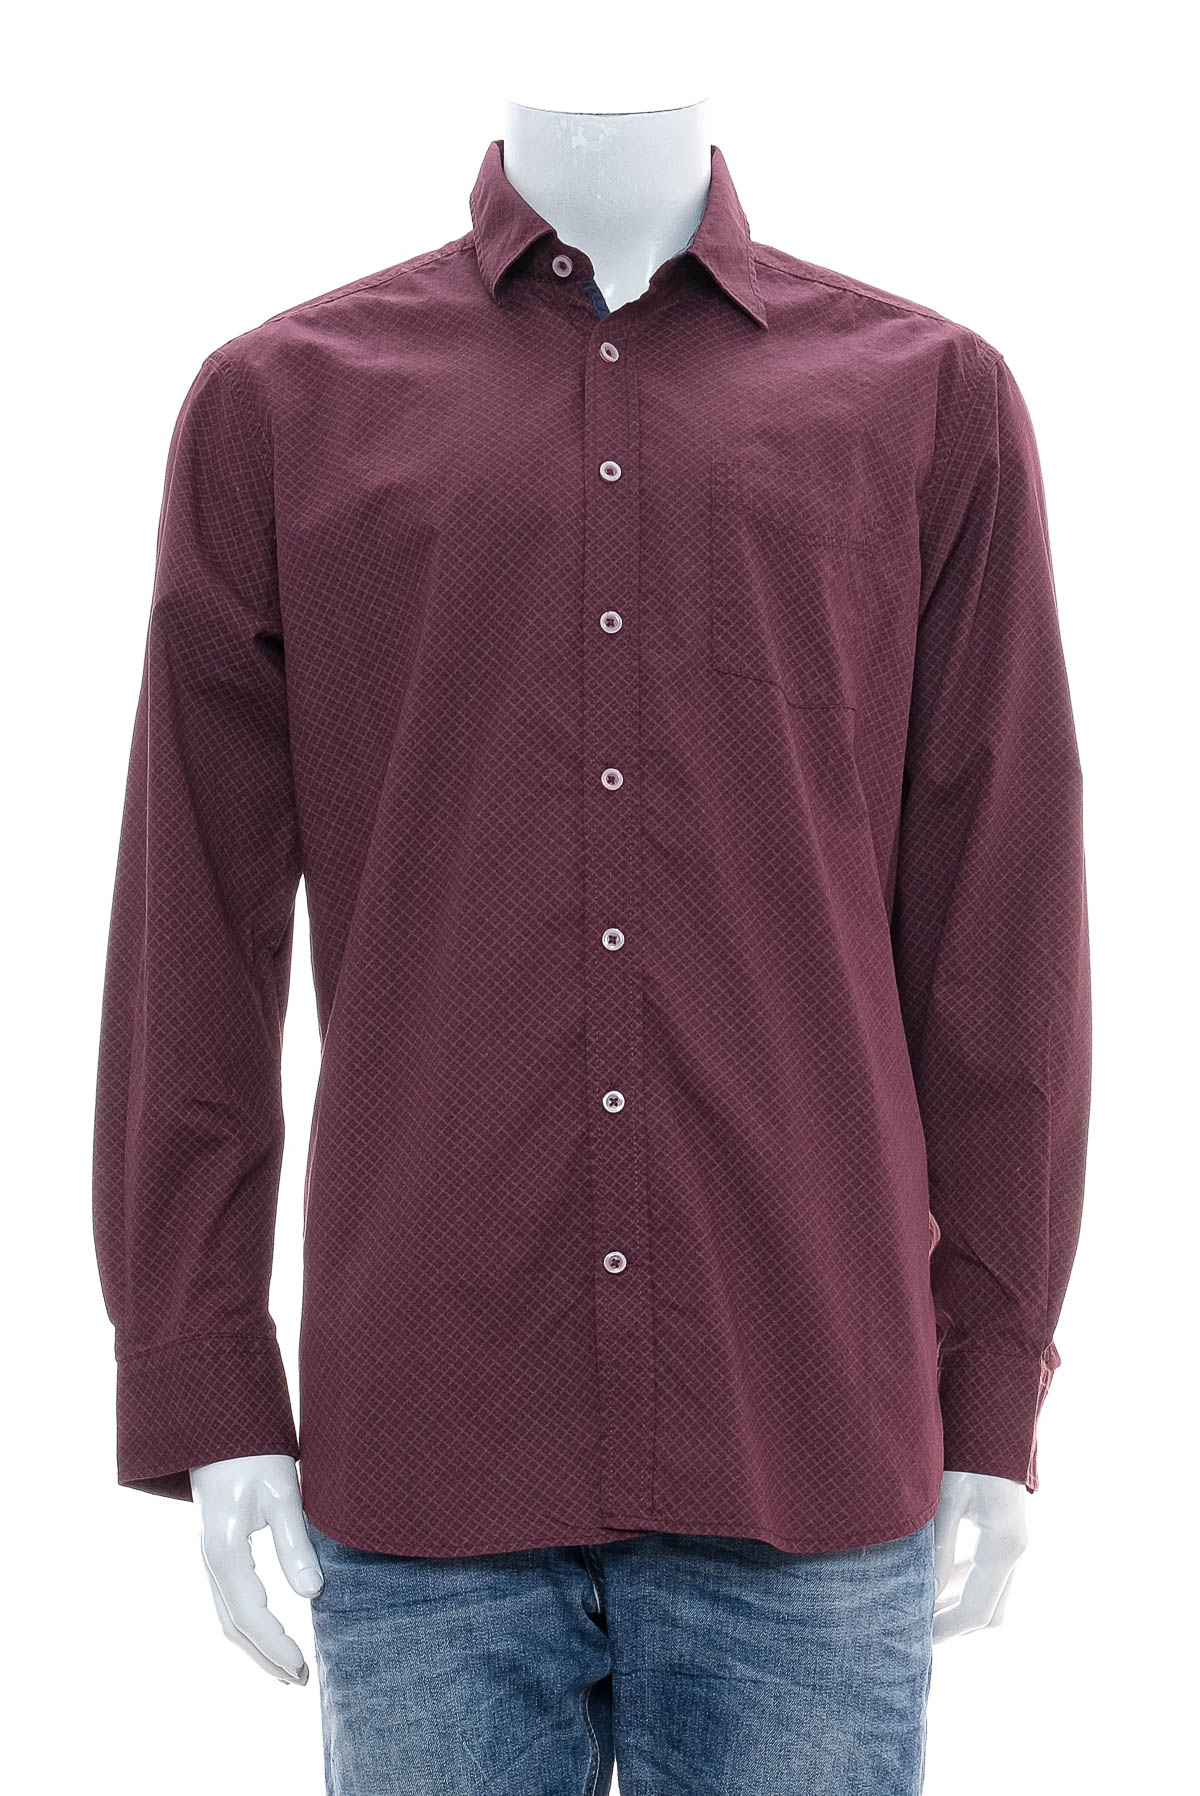 Ανδρικό πουκάμισο - Paul R. Smith - 0